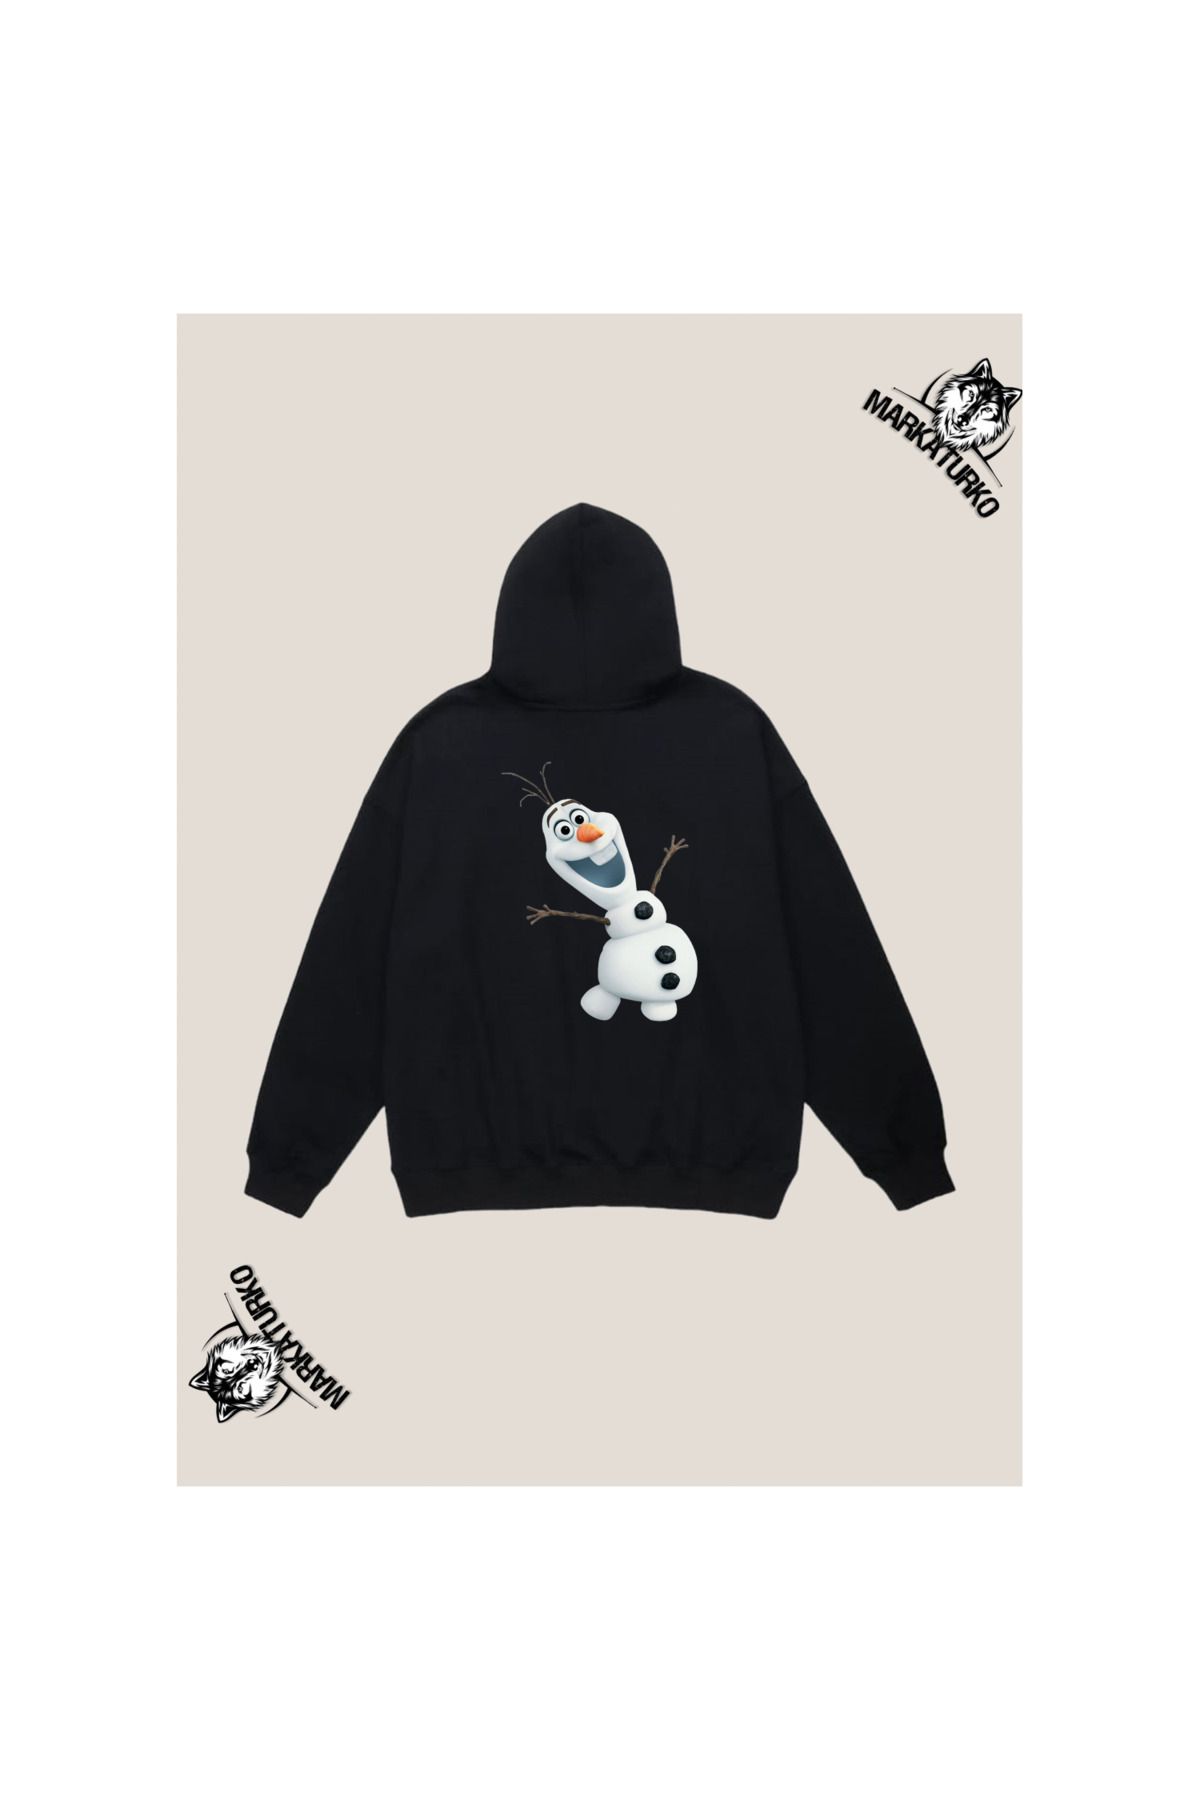 MarkaTurko Frozen Özel Tasarım Sırt Baskılı Siyah Kapşonlu Unisex Sweatshirt 2404-3